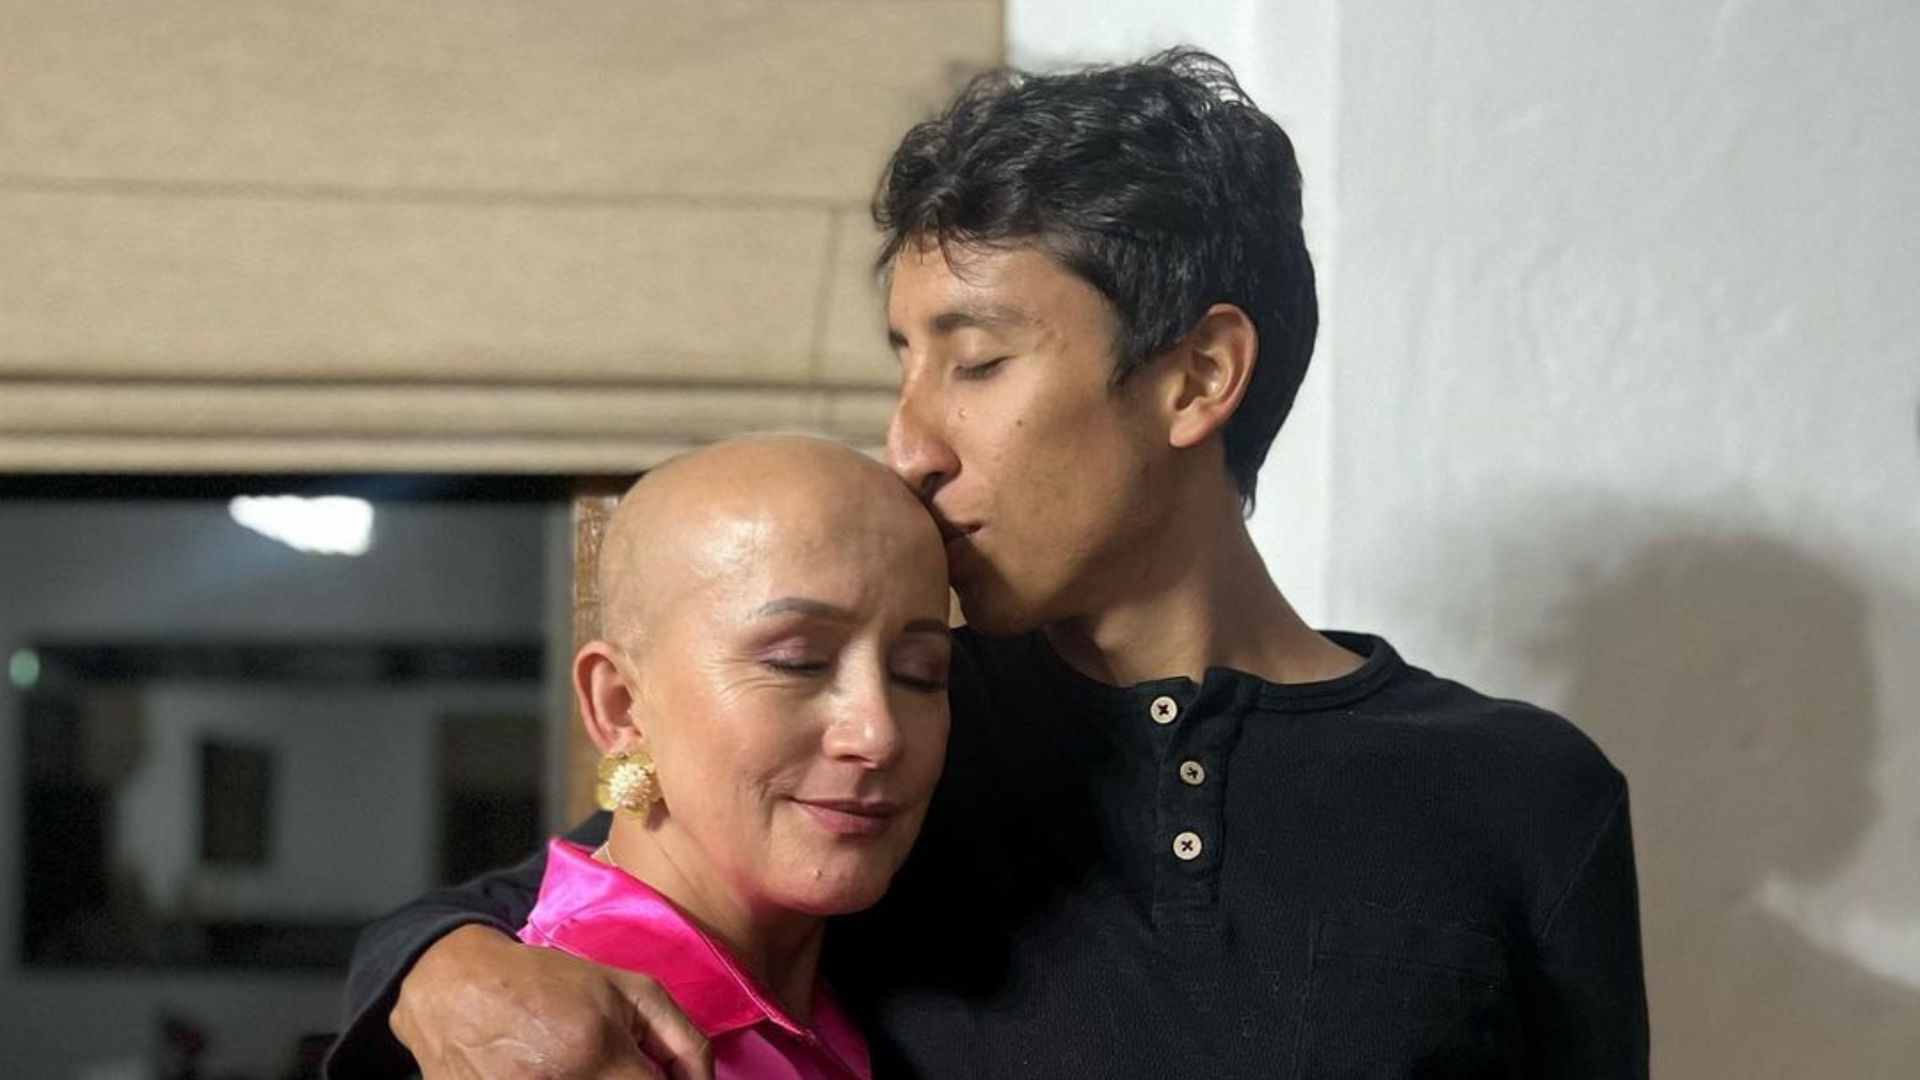 Mamá de Egan Bernal recibió una buena noticia sobre su cáncer: “Hoy mi sonrisa tiene una razón muy poderosa”